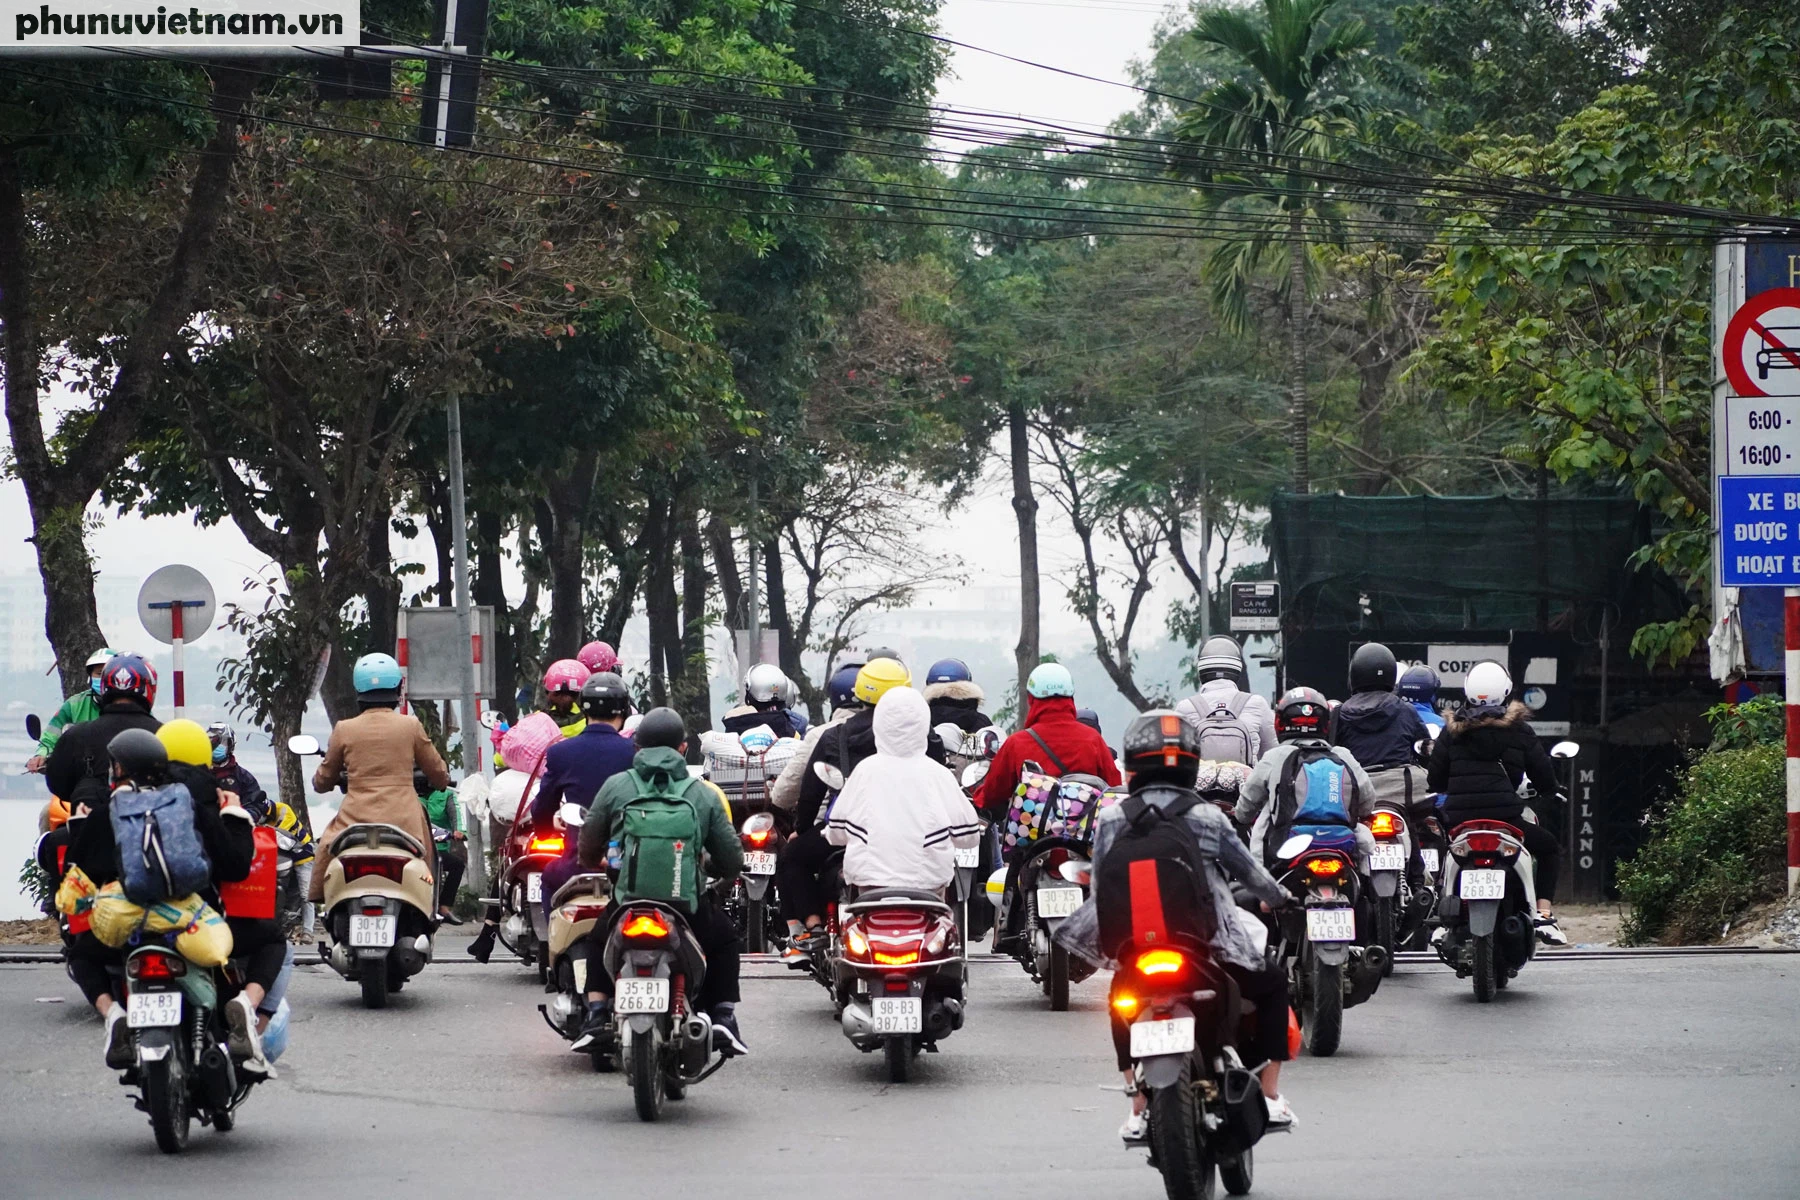 Người dân các tỉnh thành rục rịch trở lại Hà Nội làm việc sau kỳ nghỉ Tết - Ảnh 10.